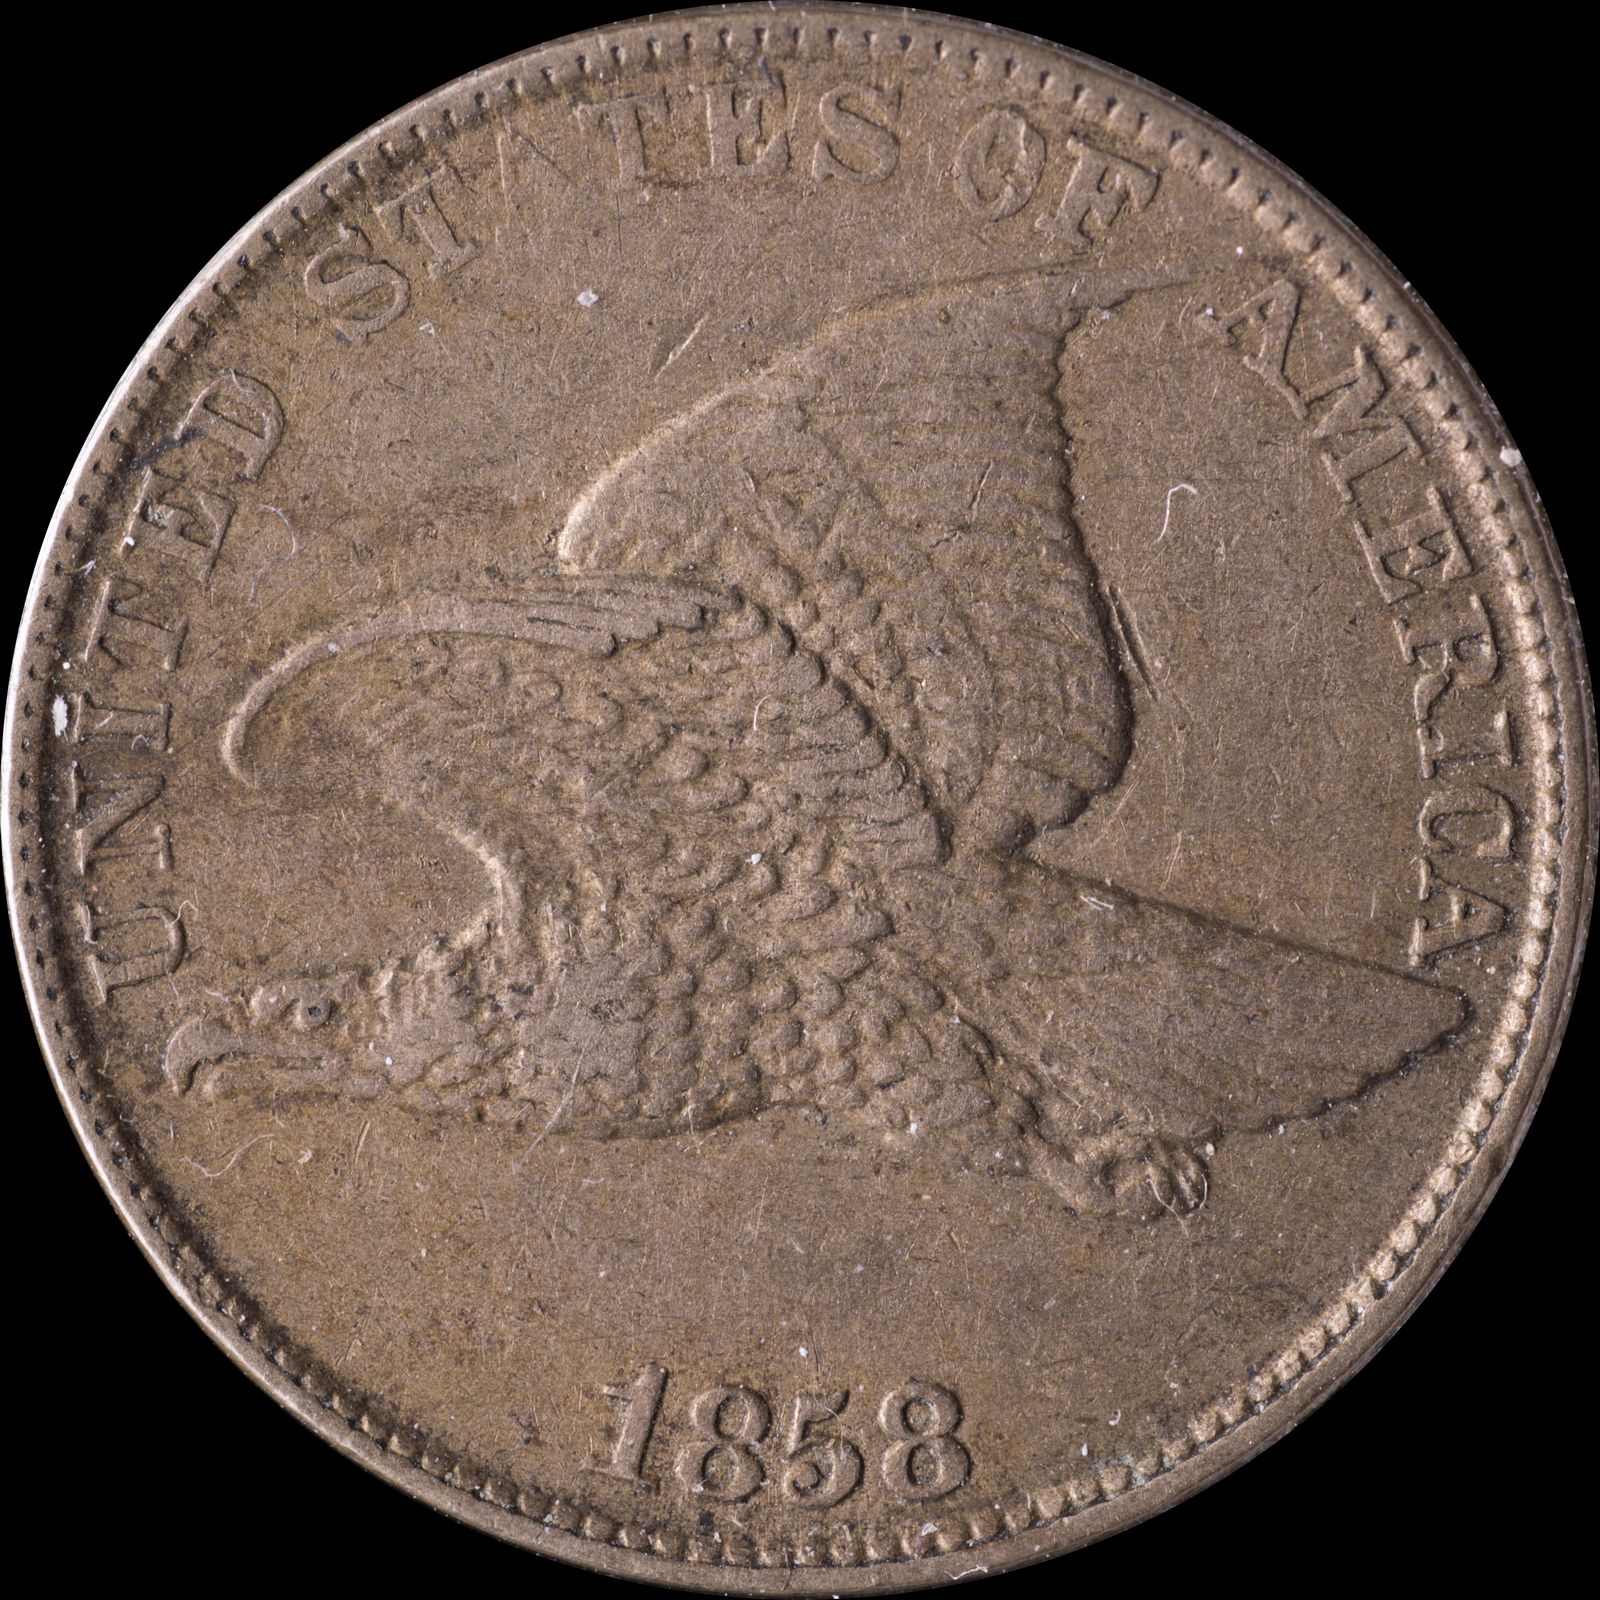 1858 LL DDO-012 - Flying Eagle Penny